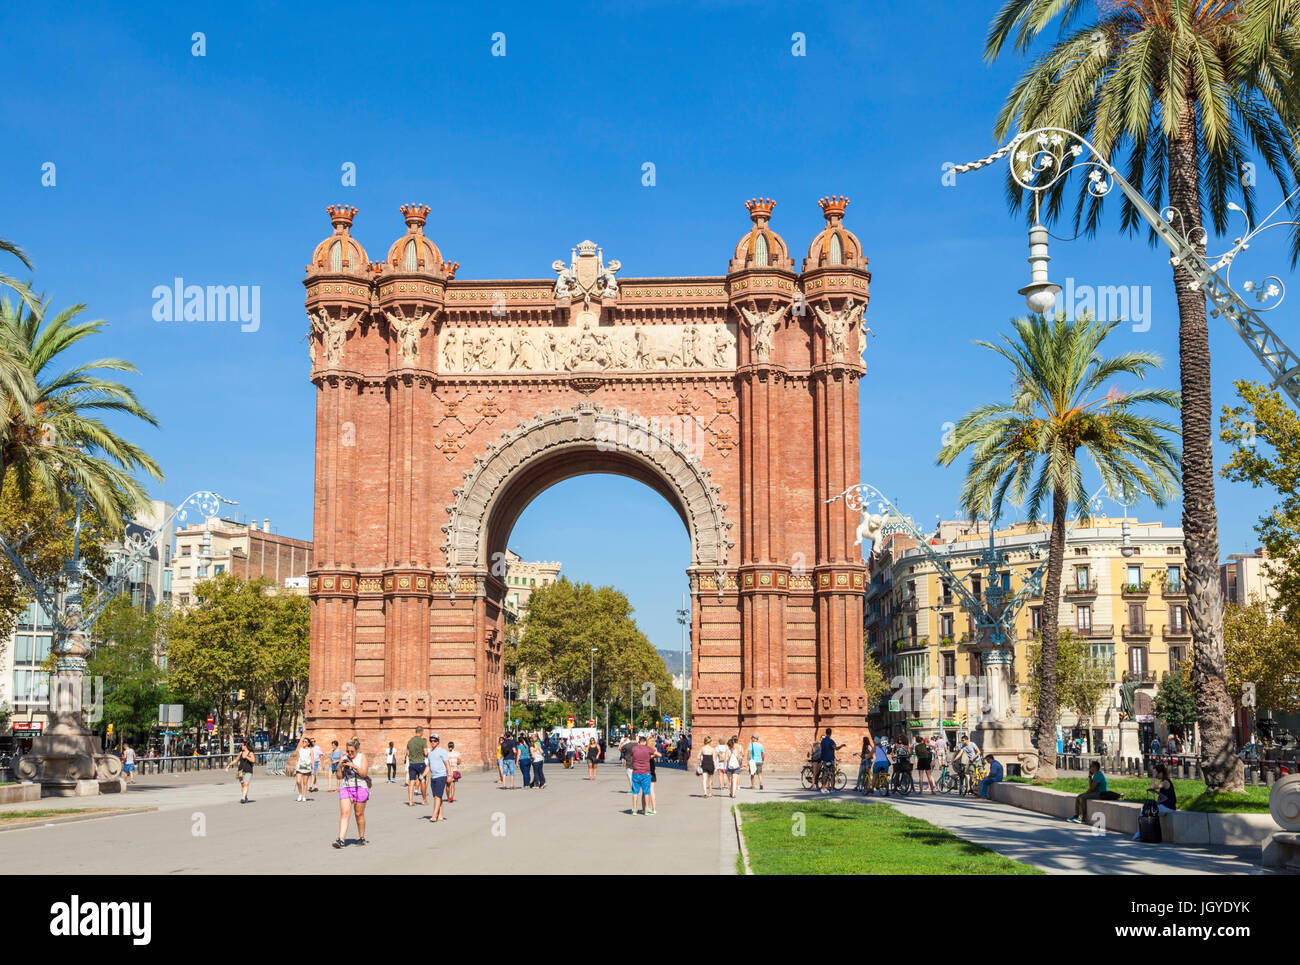 Barcellona Catalunya Il Arc de Triomf de Barcelona Arco de Triunfo de Barcelona arco trionfale Barcellona Arc de triomphe Spagna UE Europa Catalogna Foto Stock